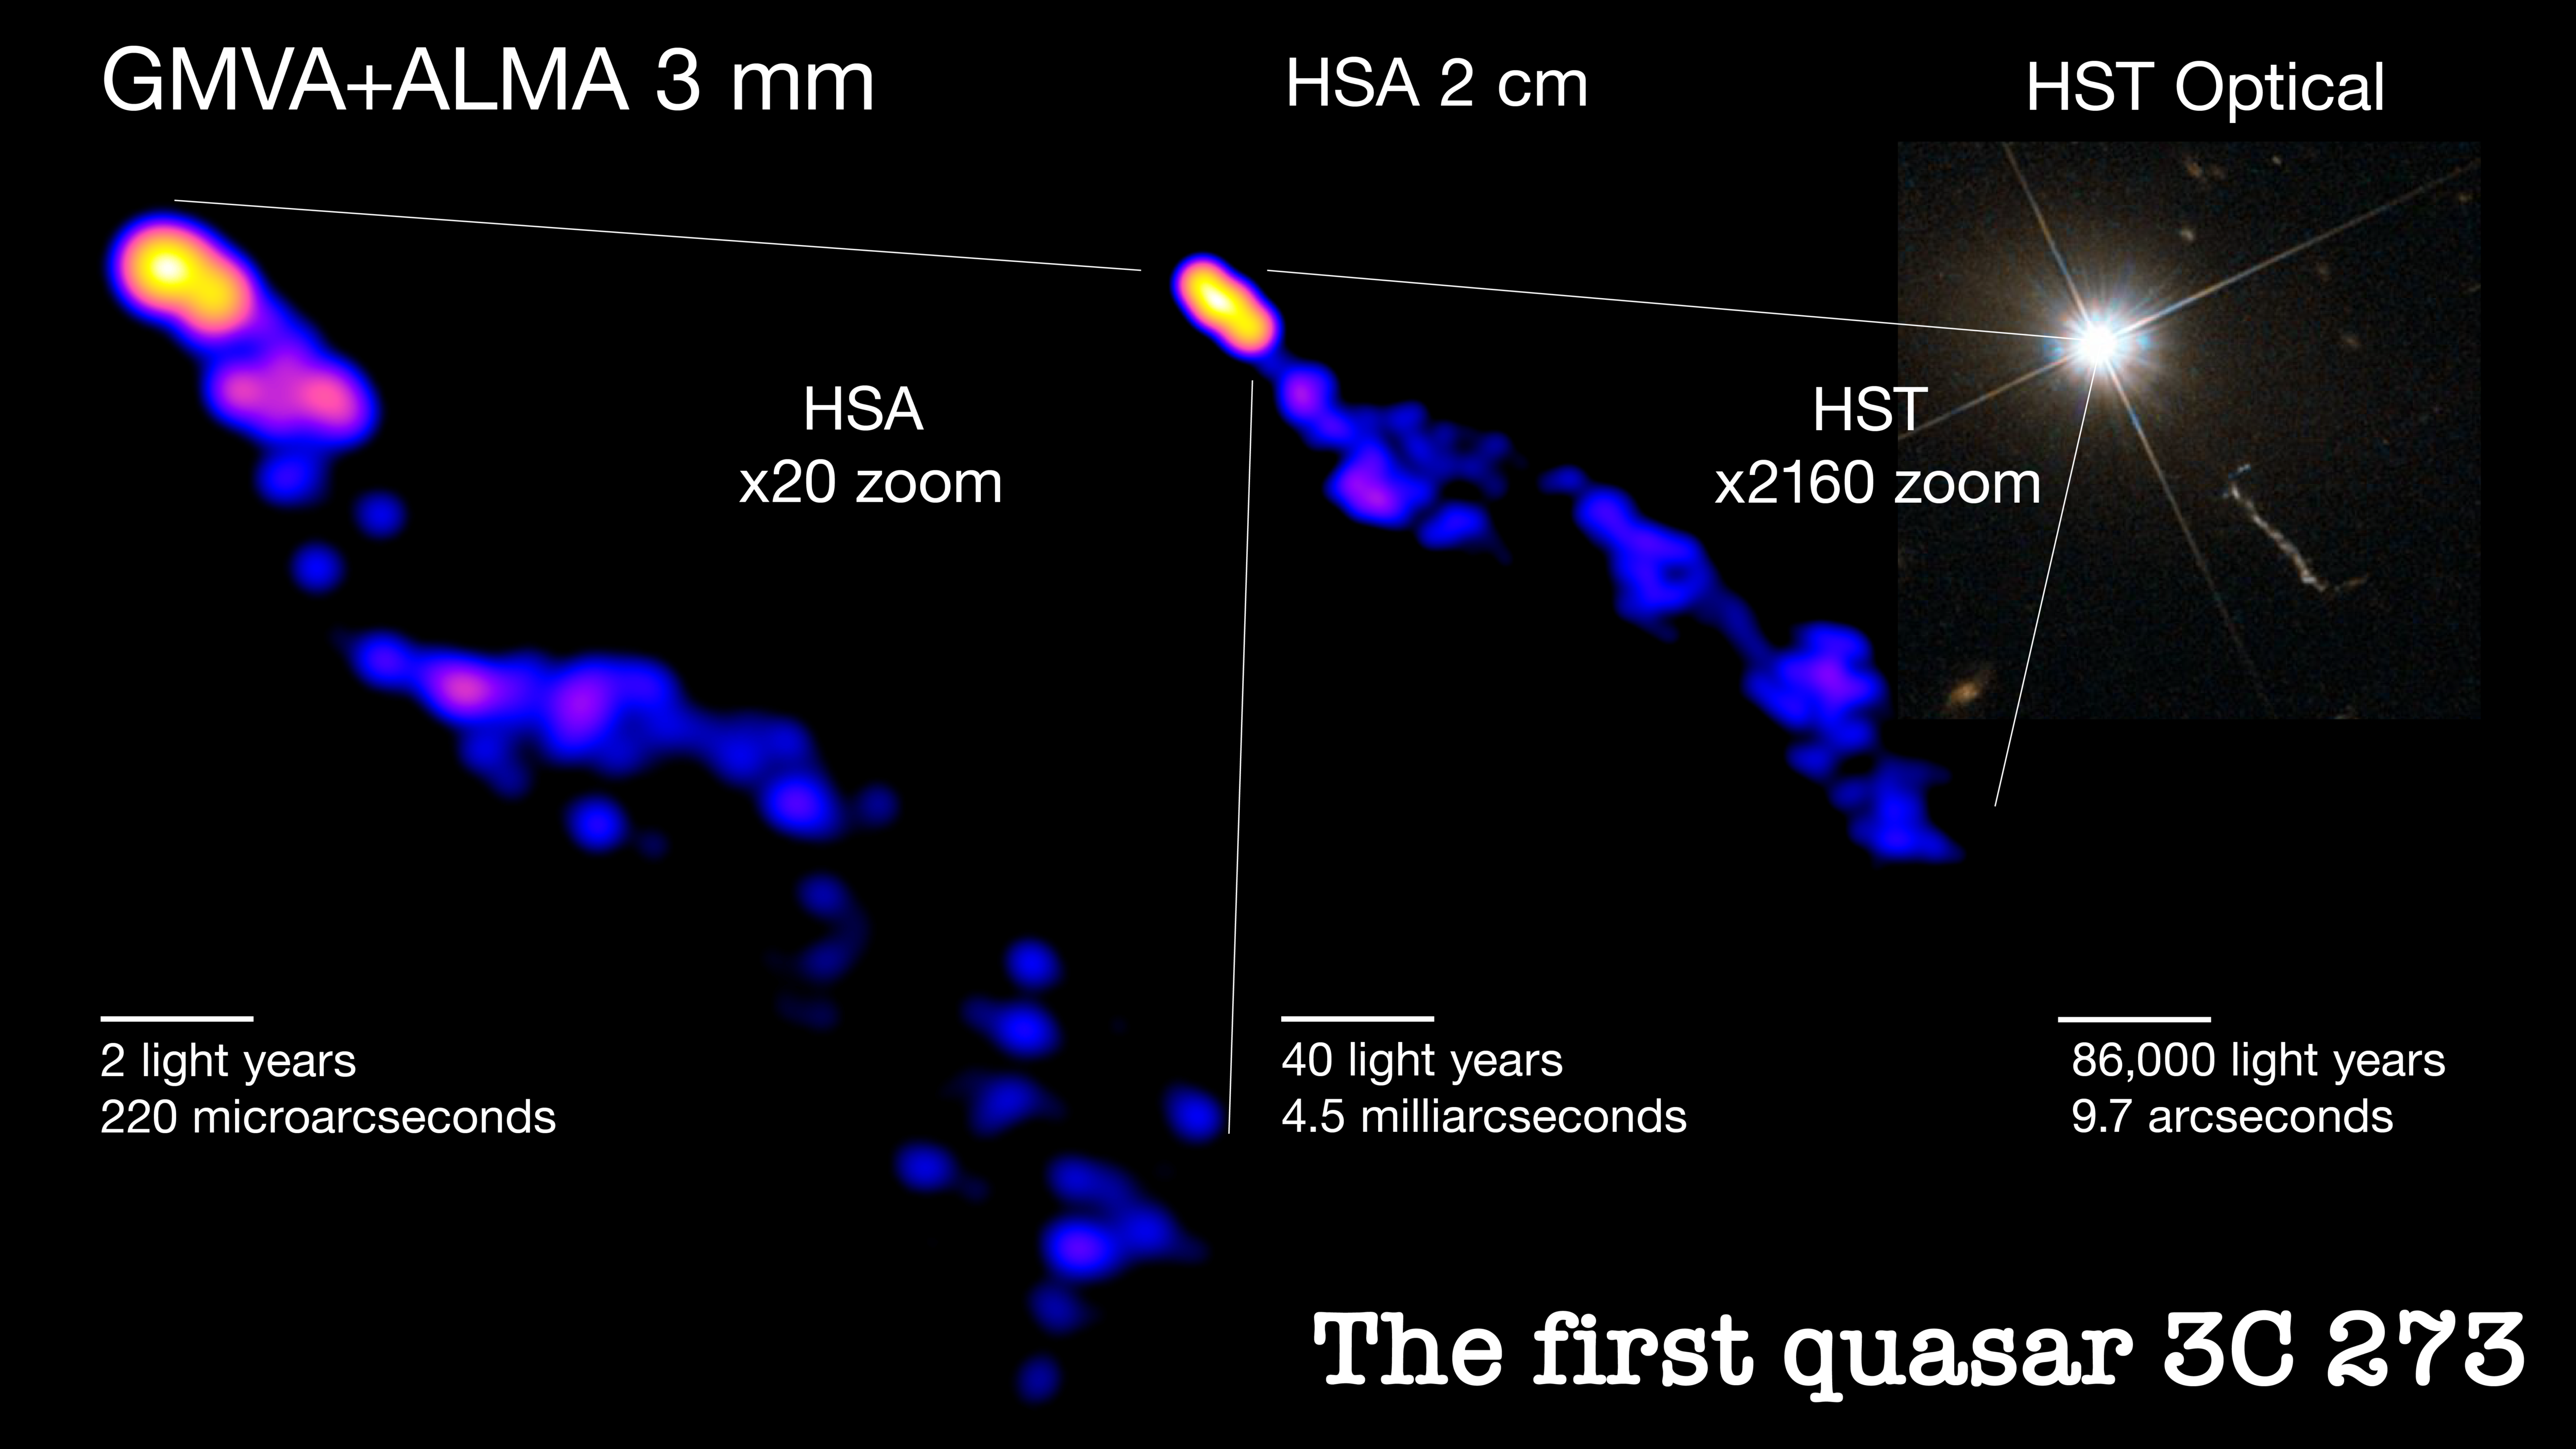 Las vistas del jet 3C 273 desde lo más profundo hasta lo más lejano. La imagen de la izquierda muestra la mirada más profunda hasta el momento en el chorro de plasma del cuásar 3C 273, lo que permitirá a los científicos estudiar más a fondo cómo se coliman o estrechan los chorros del cuásar. El poderoso chorro colimado se extiende cientos de miles de años luz más allá de la galaxia anfitriona, como se ve en la imagen del panel derecho tomada por el Telescopio Espacial Hubble. Los científicos usan imágenes de radio a diferentes escalas para medir la forma de todo el chorro. Los conjuntos utilizados son el Global Millimeter VLBI Array (GMVA) junto con el Atacama Large Millimeter/submillimeter Array (ALMA) y el High Sensitivity Array (HSA). Créditos: Hiroki Okino y Kazunori Akiyama; Imágenes GMVA+ALMA y HSA: Okino et al.; Imagen HST: ESA/Hubble y NASA.